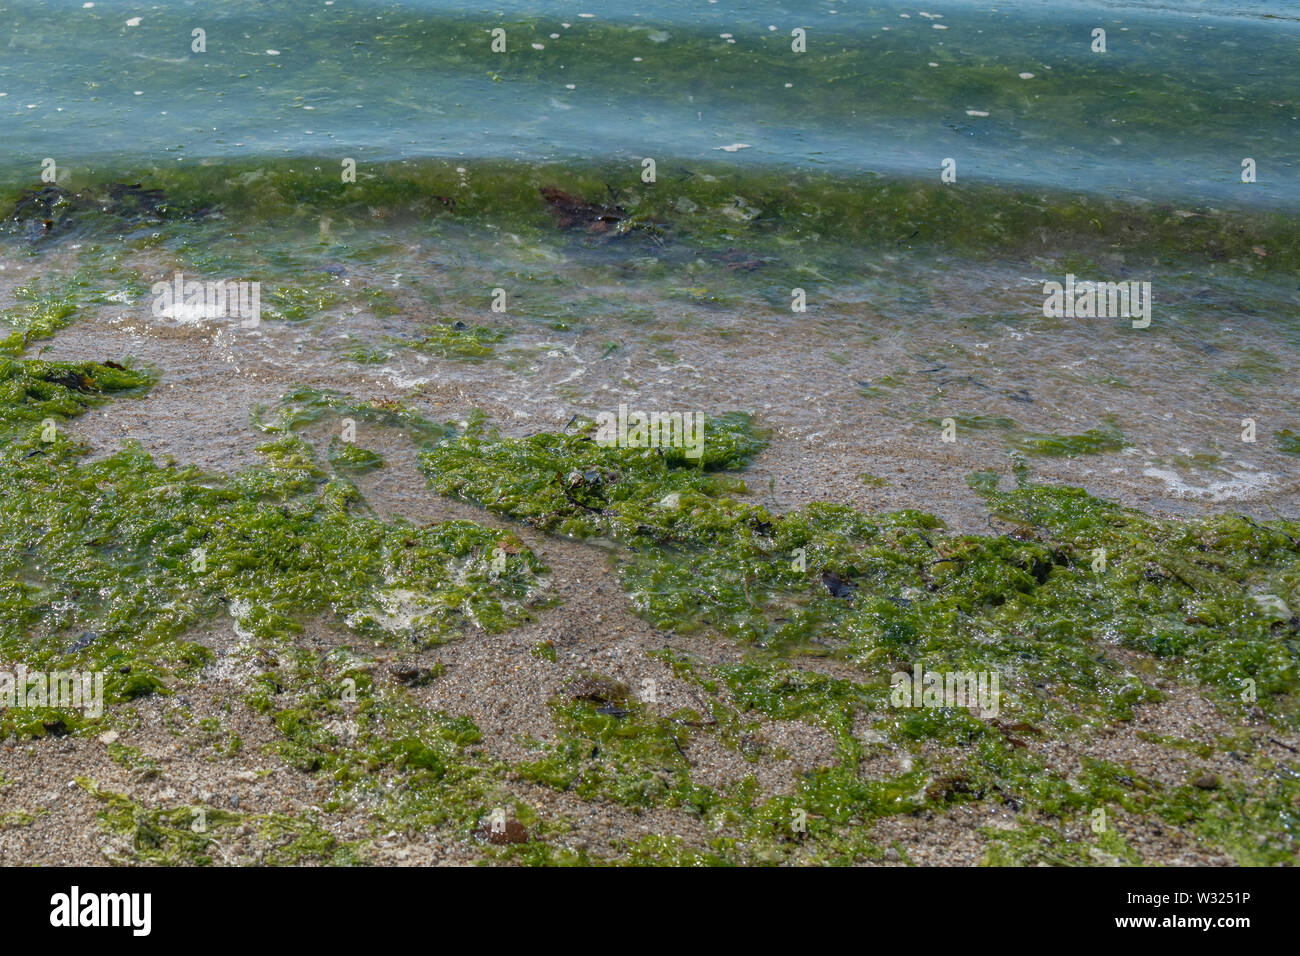 Gestrandet grüne Algen Algen Sea Lettuce/Ulva lactuca an Land auf einem Strand gespült und die Drift Linie abgelegt. Angeschwemmte Metapher, gestrandete Konzept Stockfoto